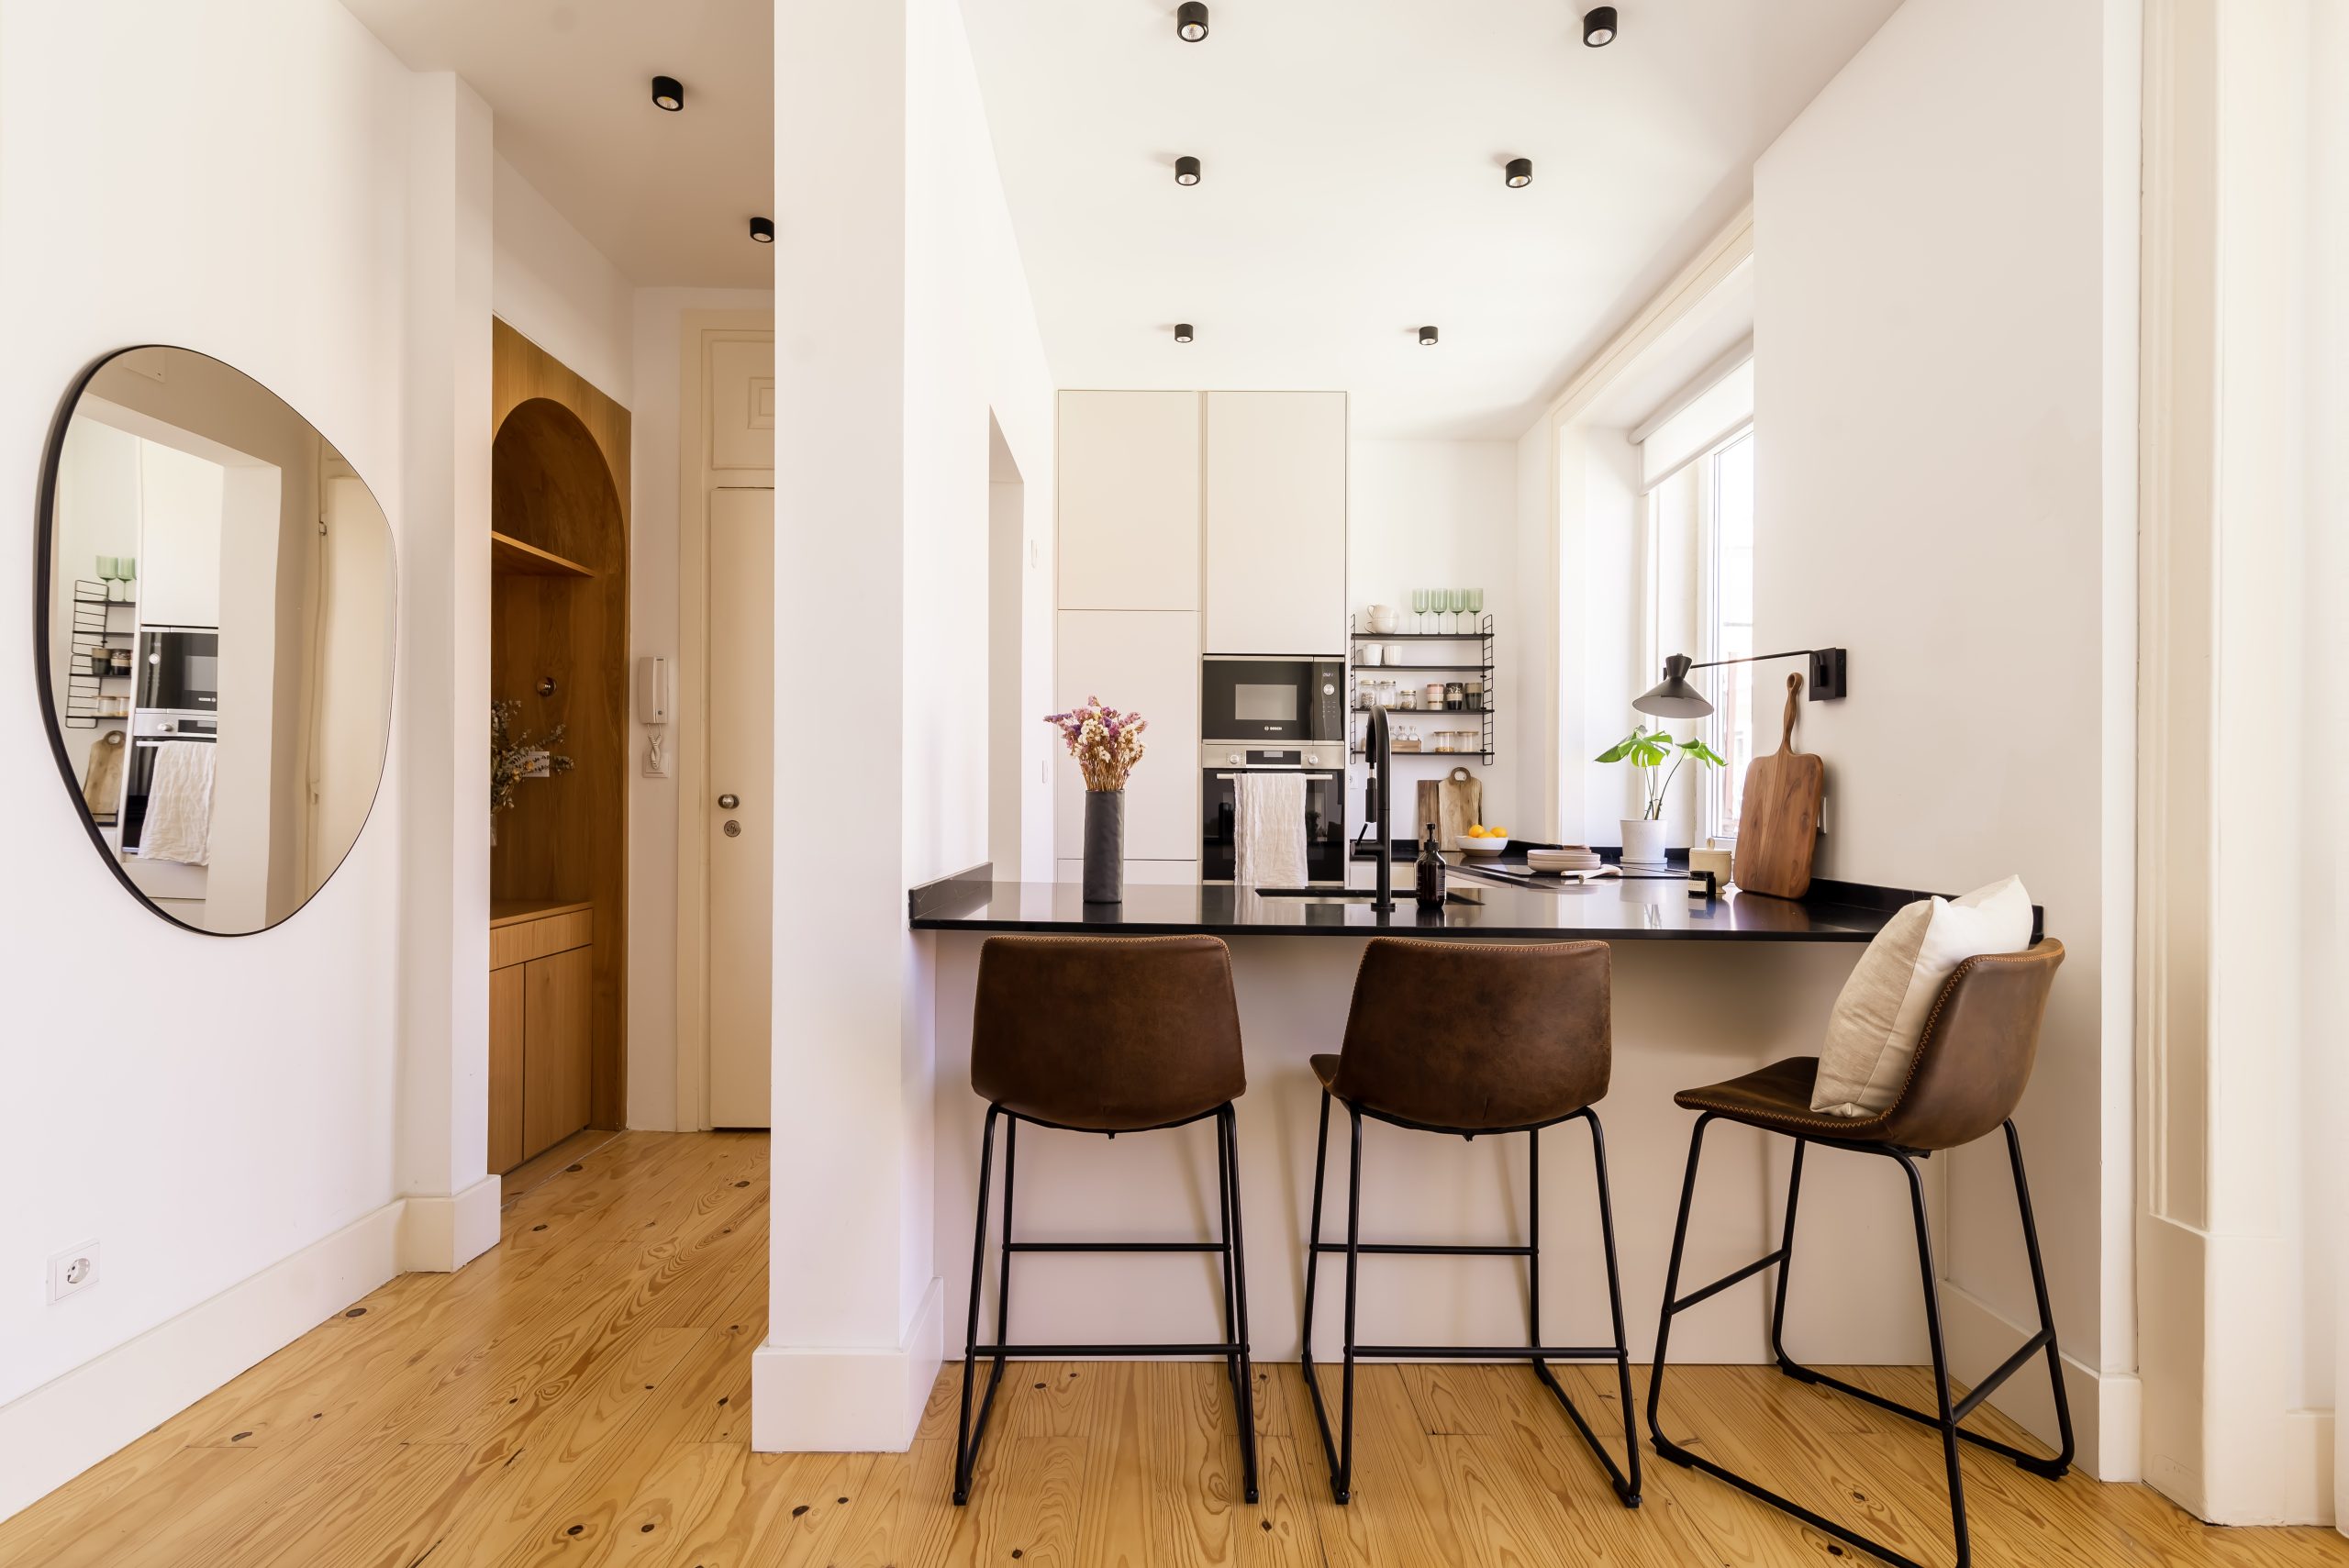 cozinha moderna e minimalista com cadeirões altos e espelho irregular